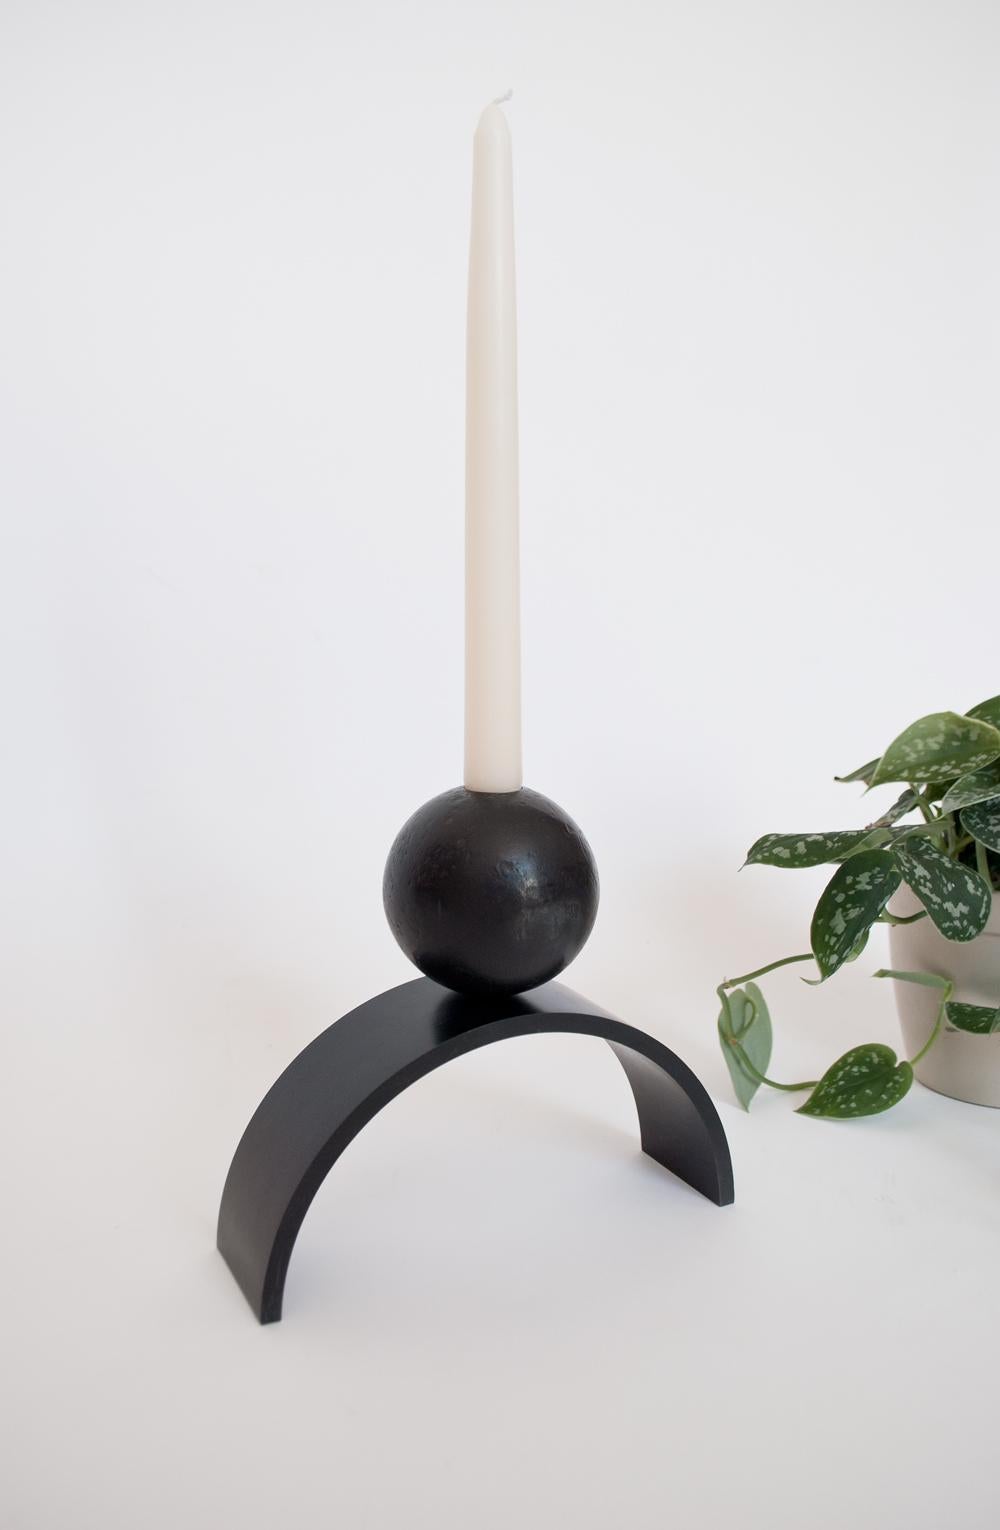 Louis Jobst' Bogen und Kugel extra großer Kerzenhalter. Der Kerzenhalter ist aus massivem Stahl gefräst und schwarz patiniert. Der Kerzenhalter zeigt eine zeitgenössische Form eines Bogens mit einer Kugel, die elegant auf der Spitze balanciert. Das